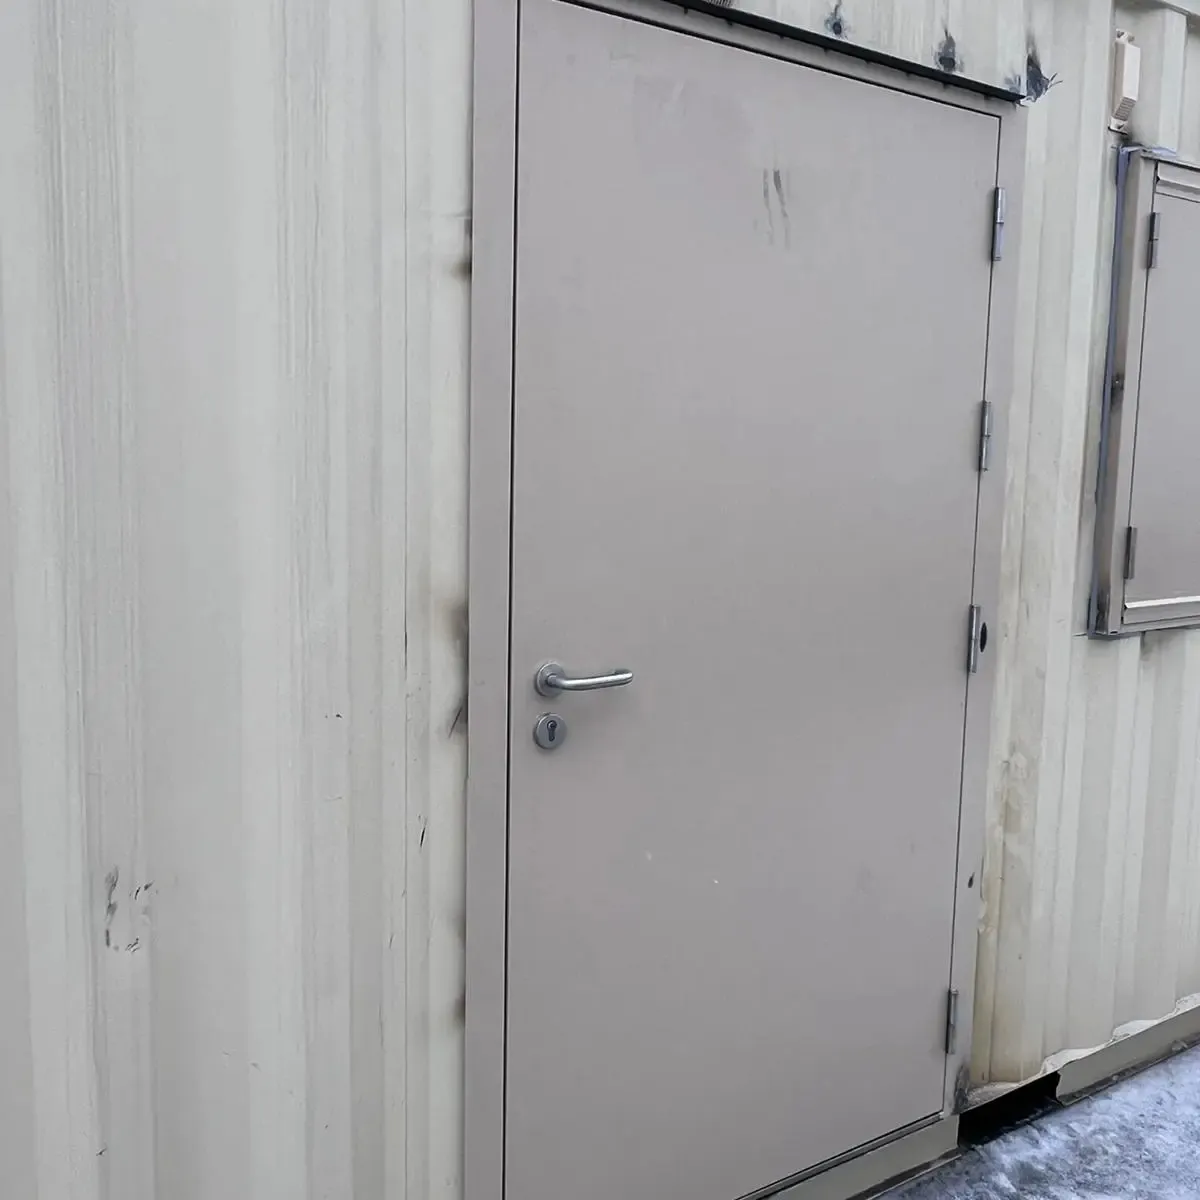 Rakitan cepat DIY pintu keamanan baja untuk rumah kontainer konstruksi luar tempat